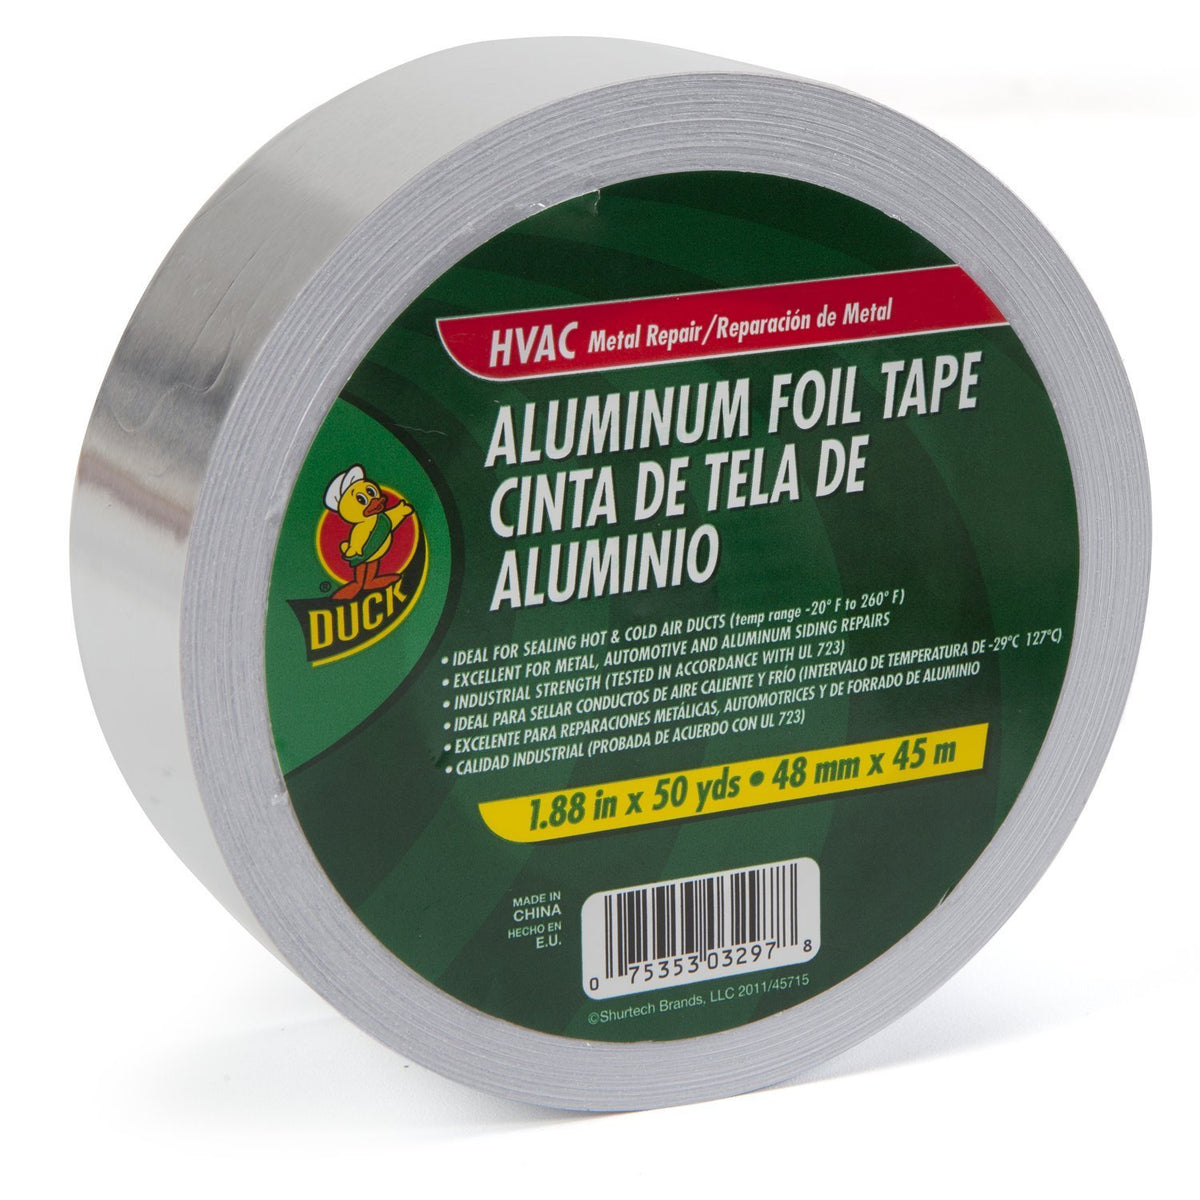 Duck 240225 HVAC Metal Repair Aluminum Foil Tape, 1.88" x 50 Yard